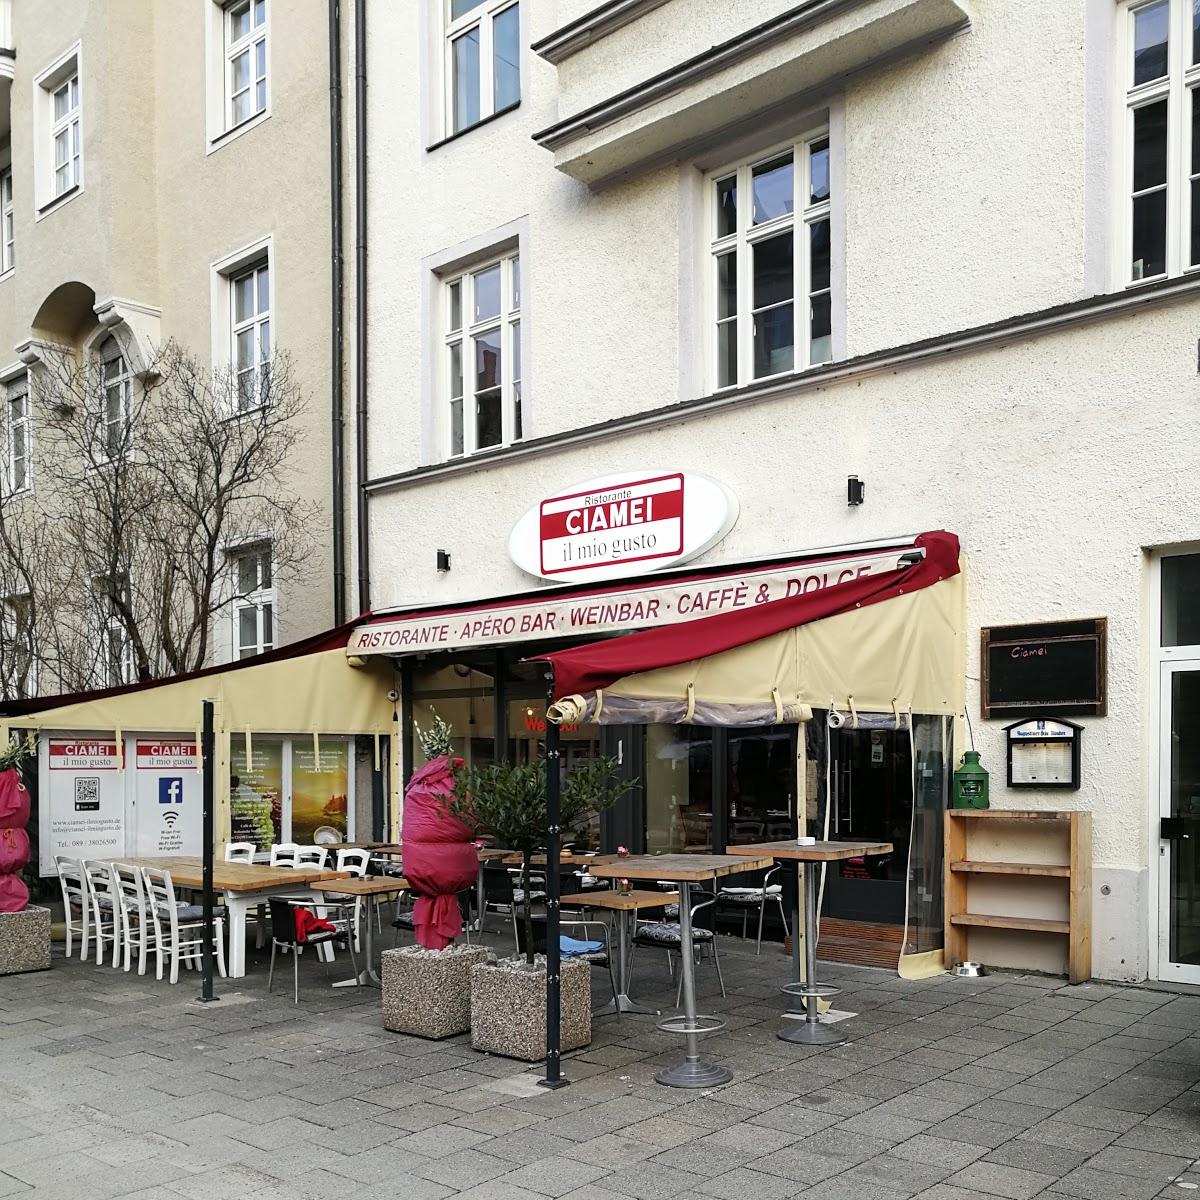 Restaurant "Ristorante CIAMEI il mio gusto" in München